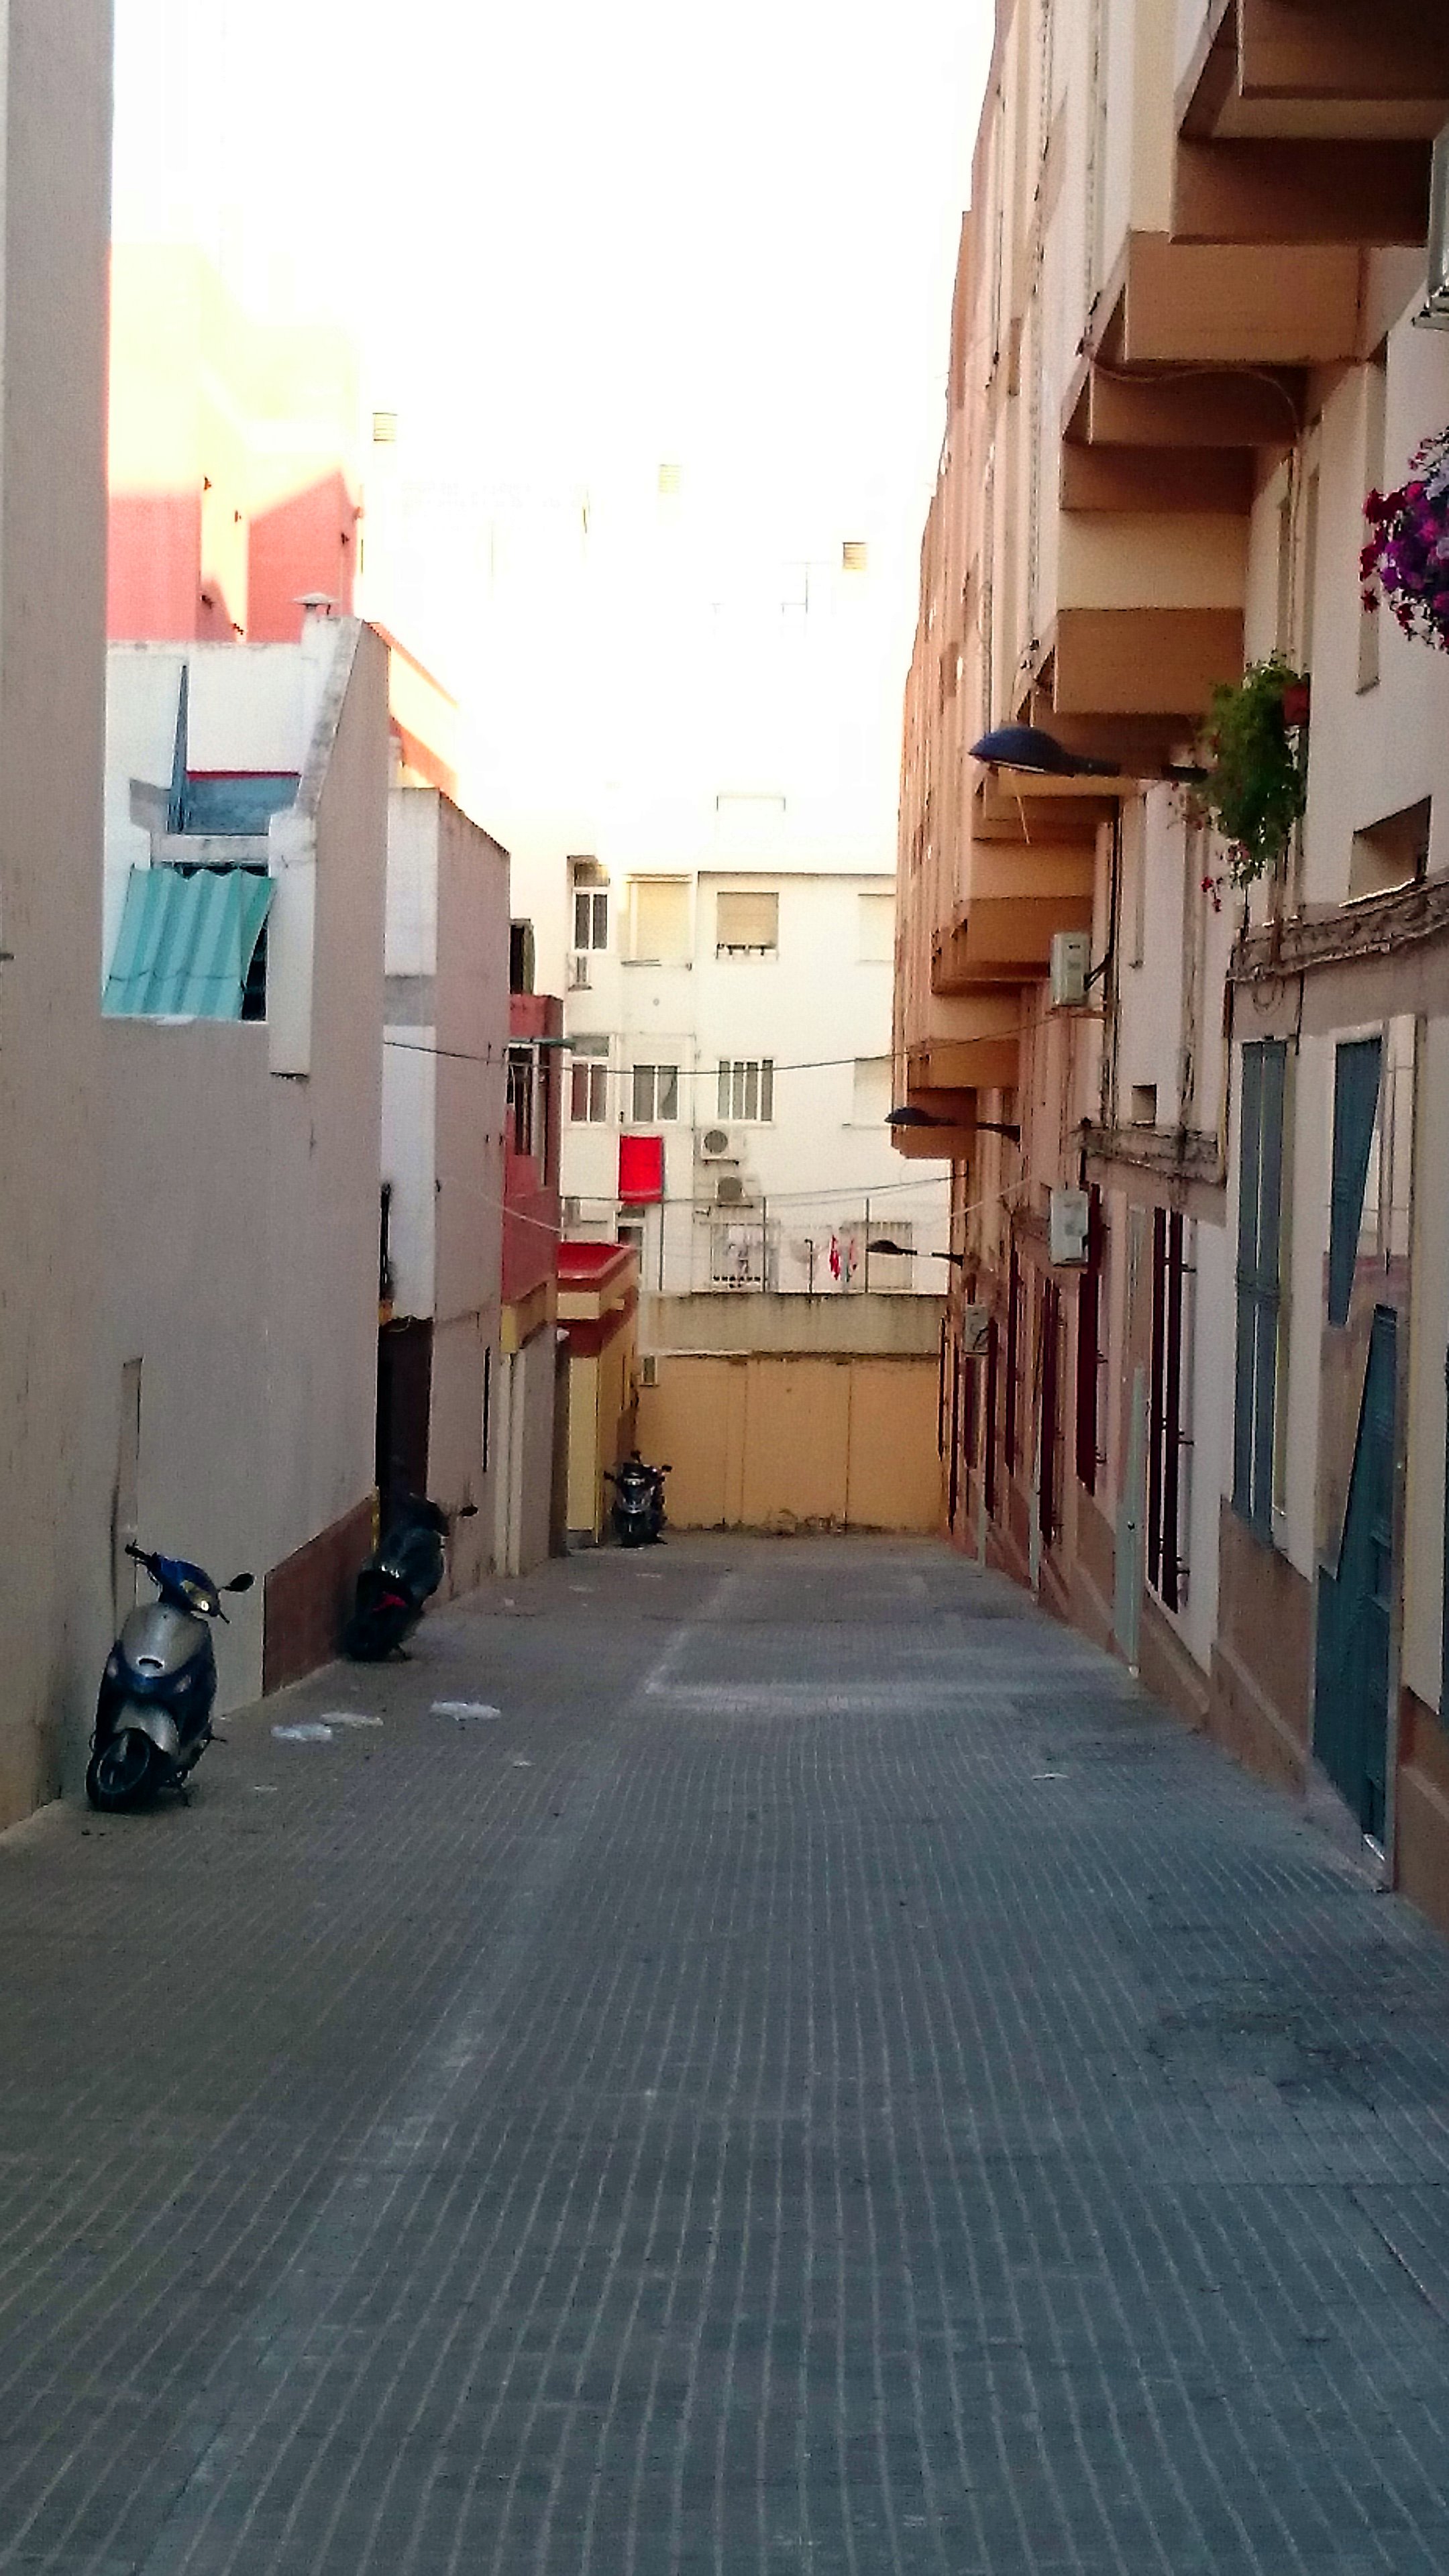 Foto: Calle Almirante Frco. Moreno - San Fernando (Cádiz), España